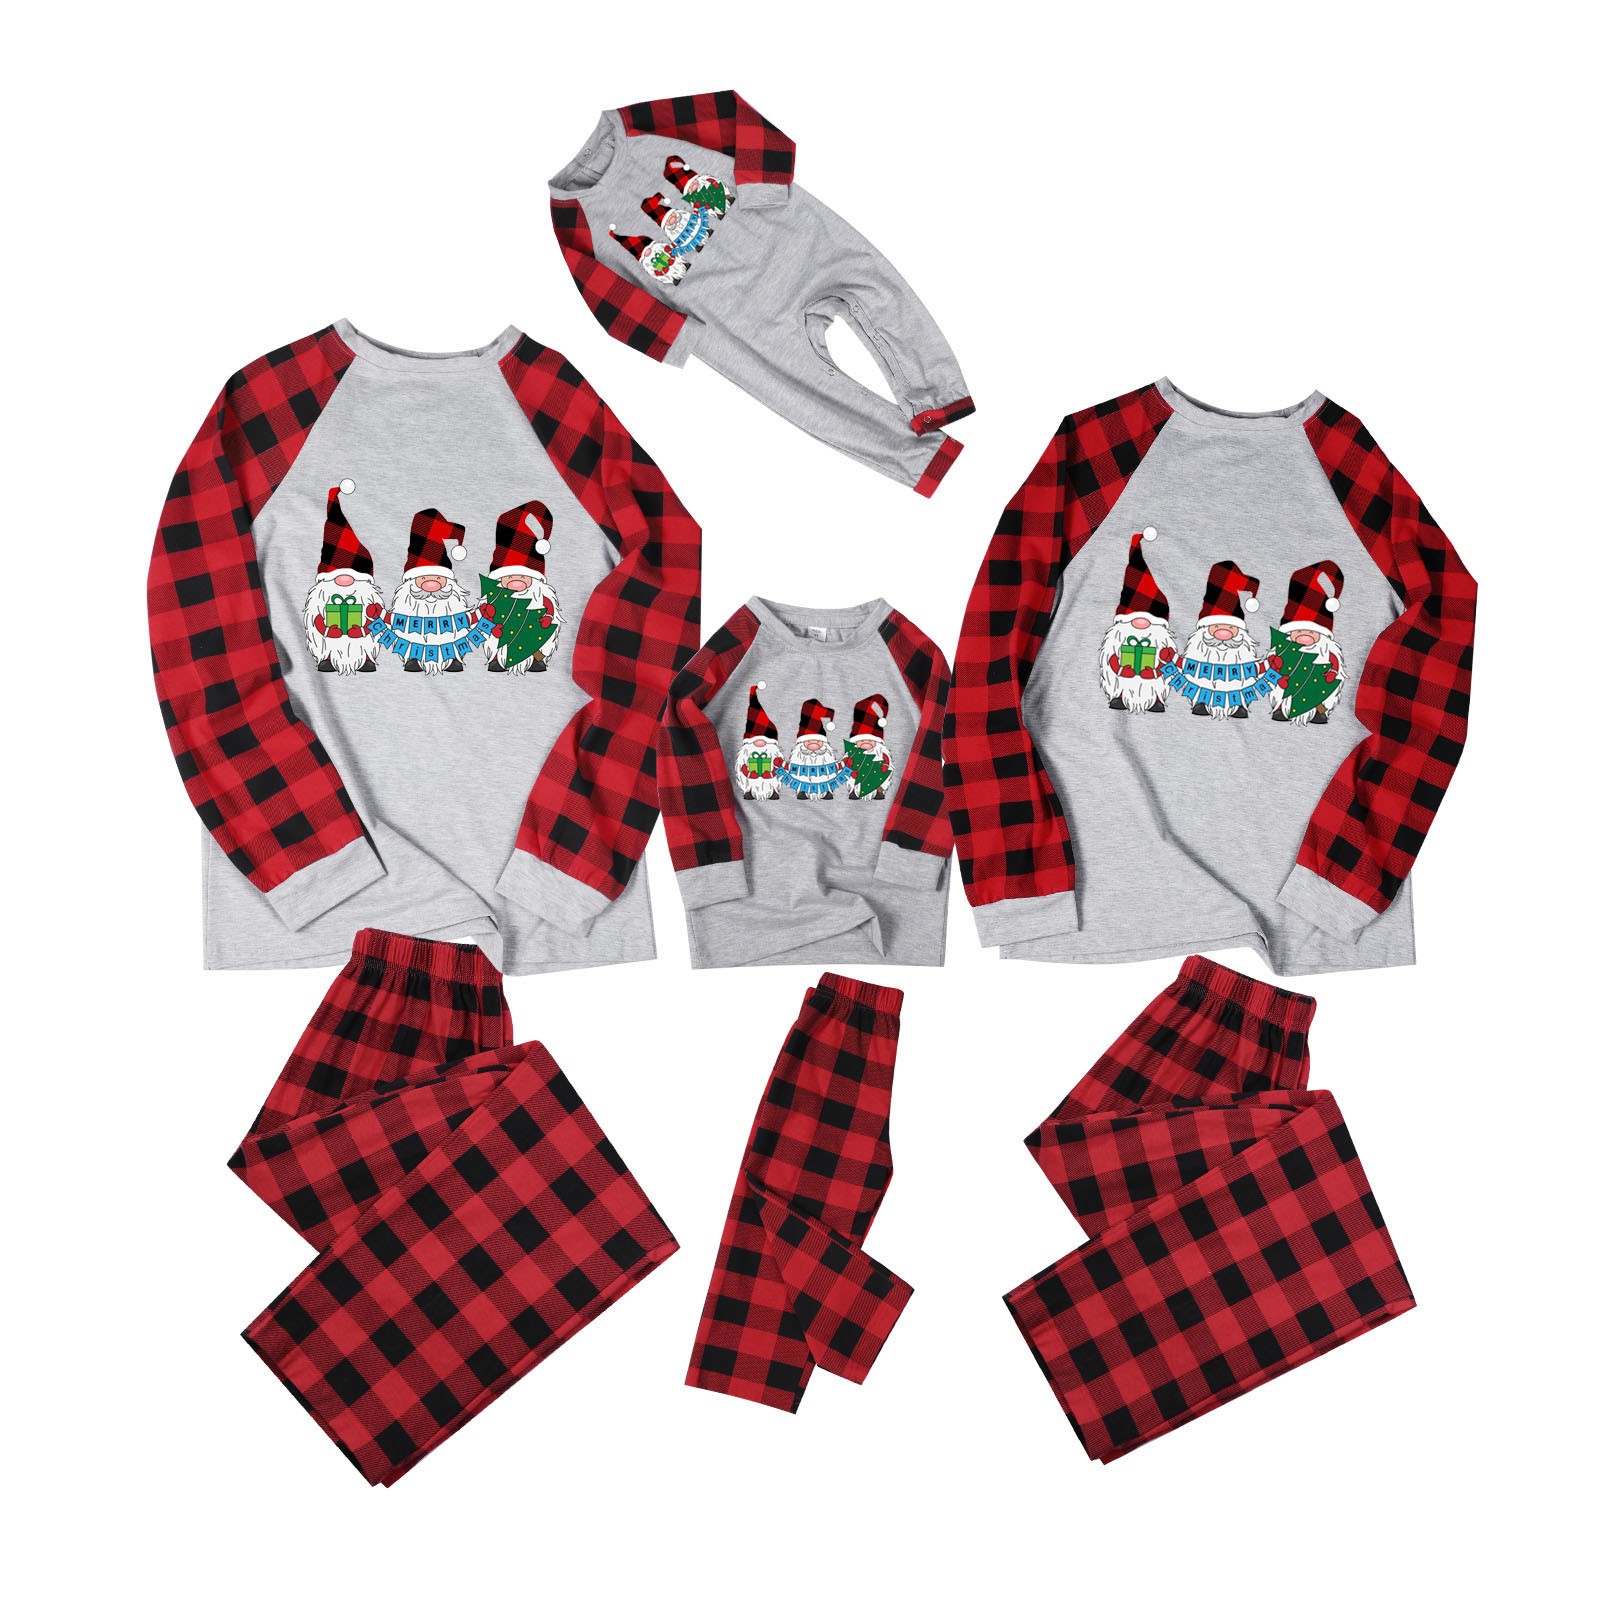 Spftem Christmas Pajamas for Family Onesies Mens Christmas Pajamas - Mens Pajamas Set Flannel - image 1 of 9